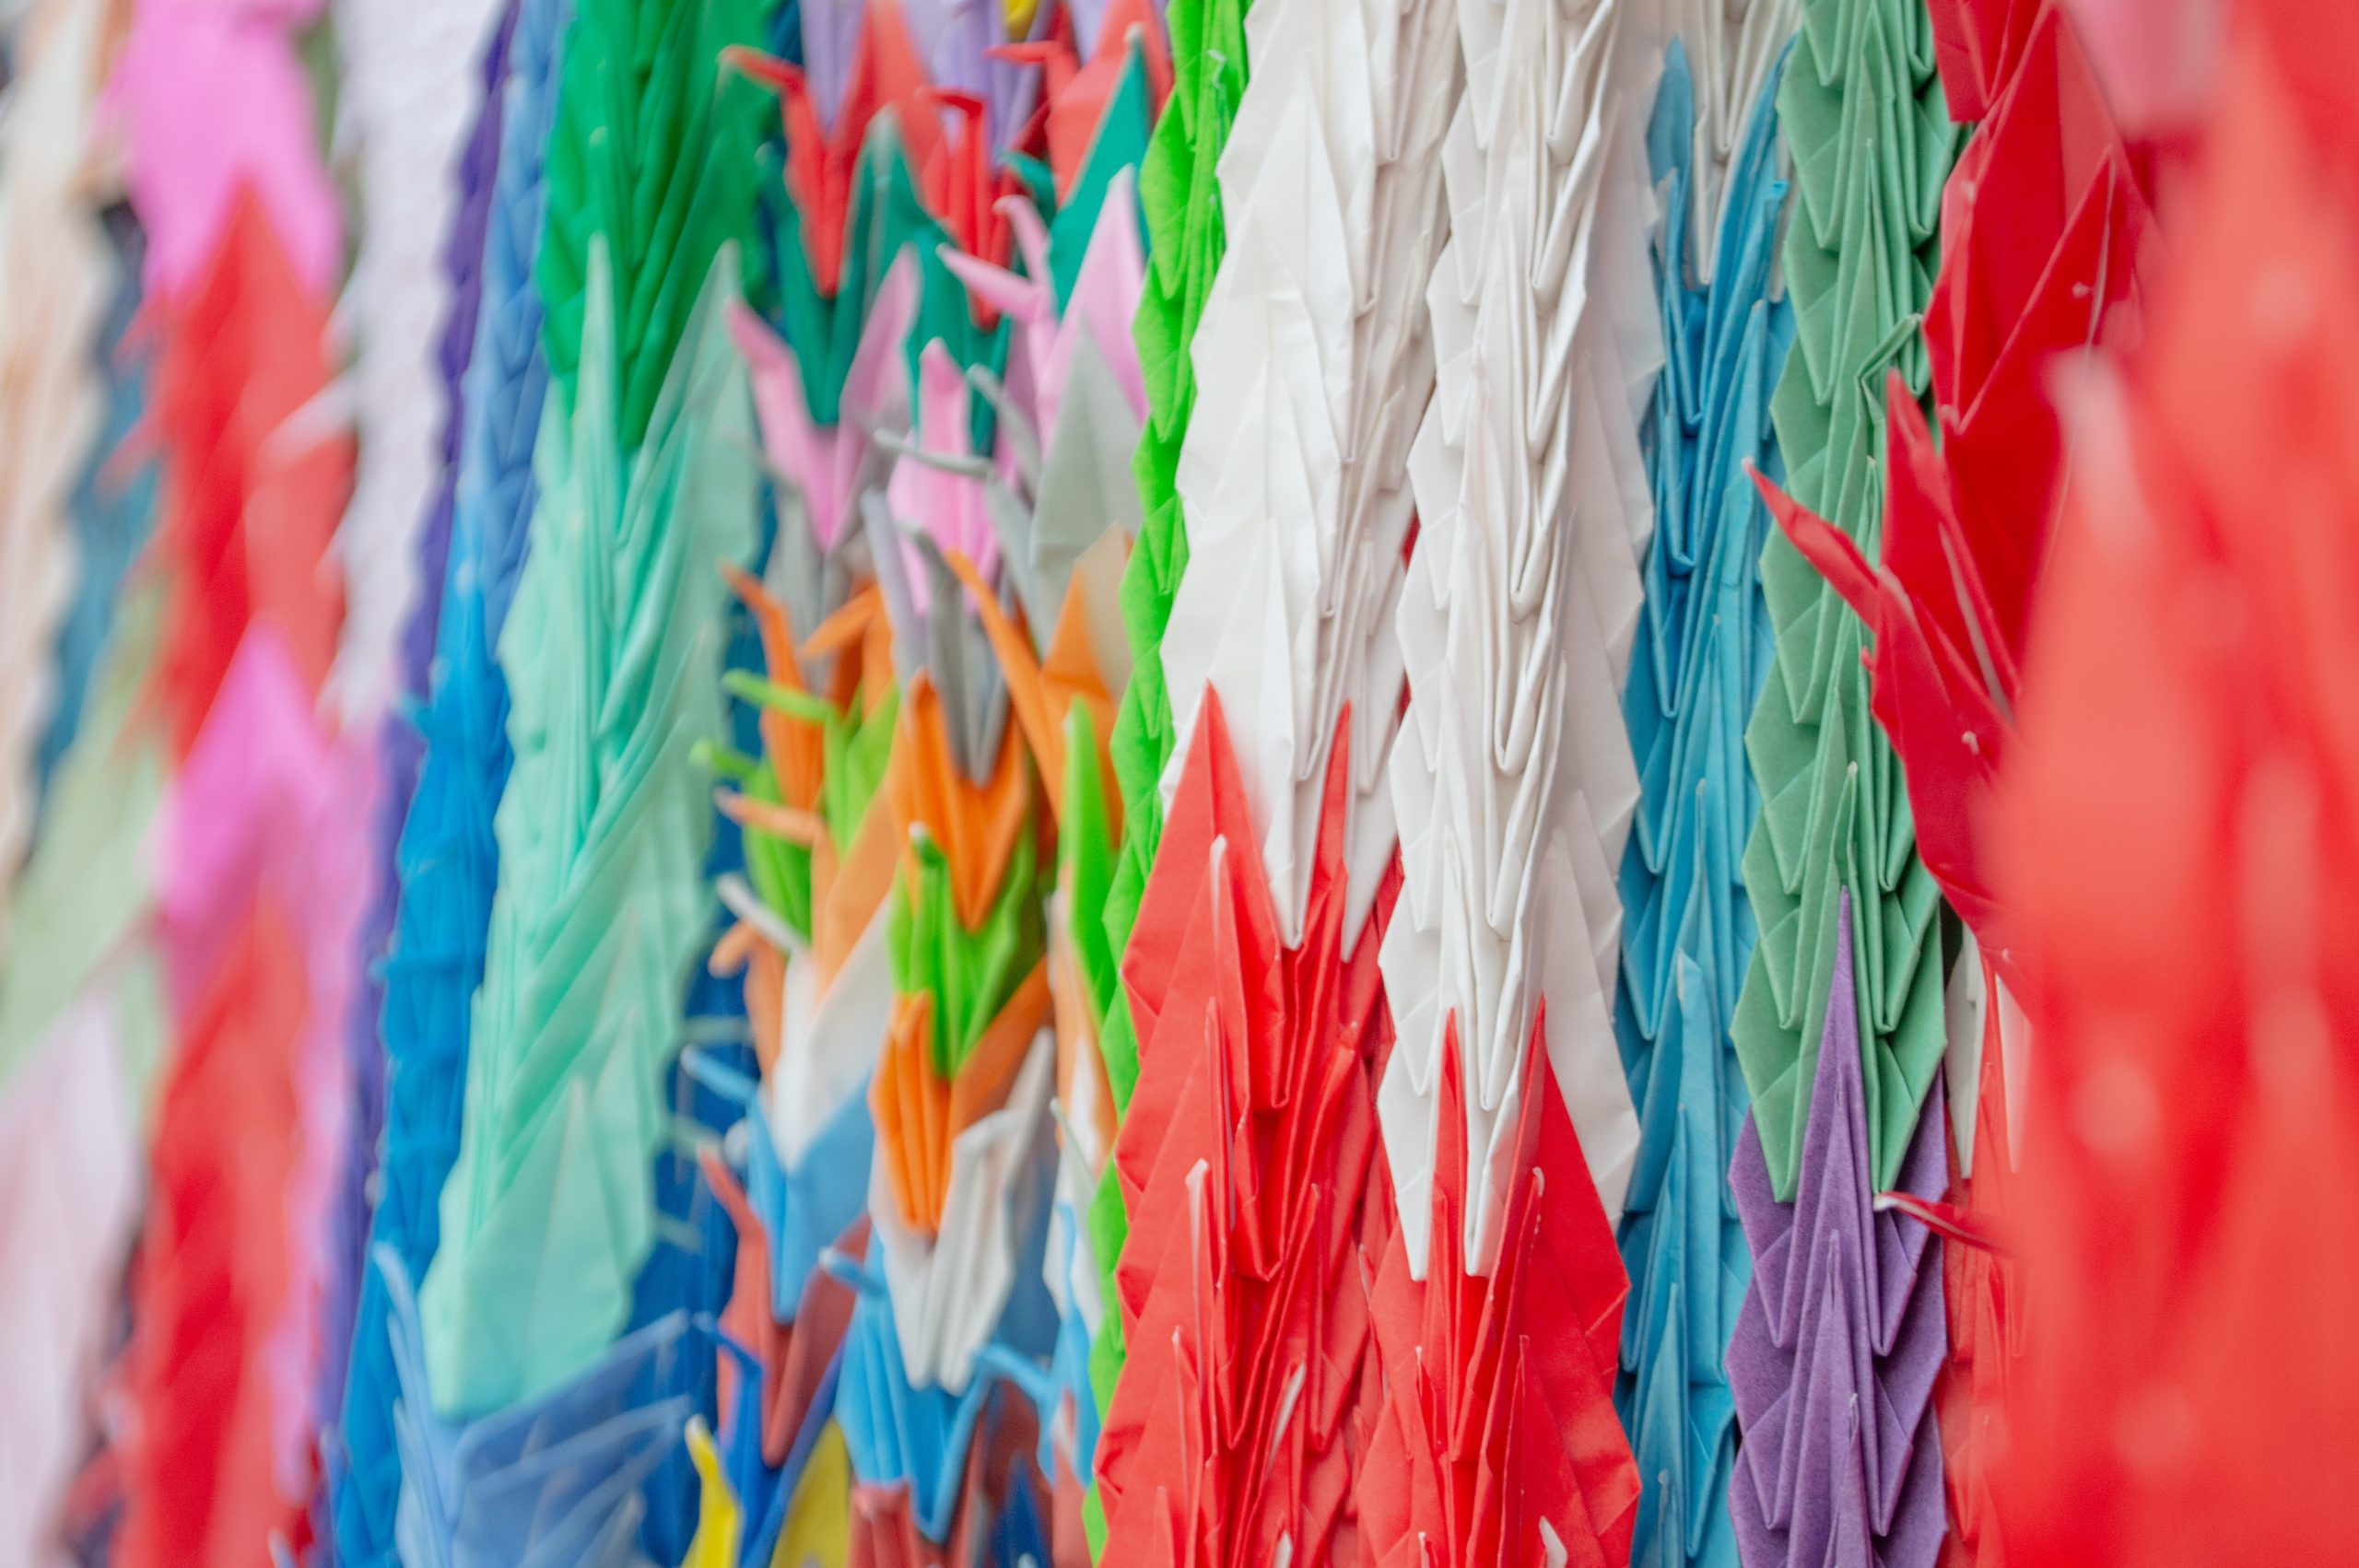 Paper cranes origami at Hiroshima peace memorial